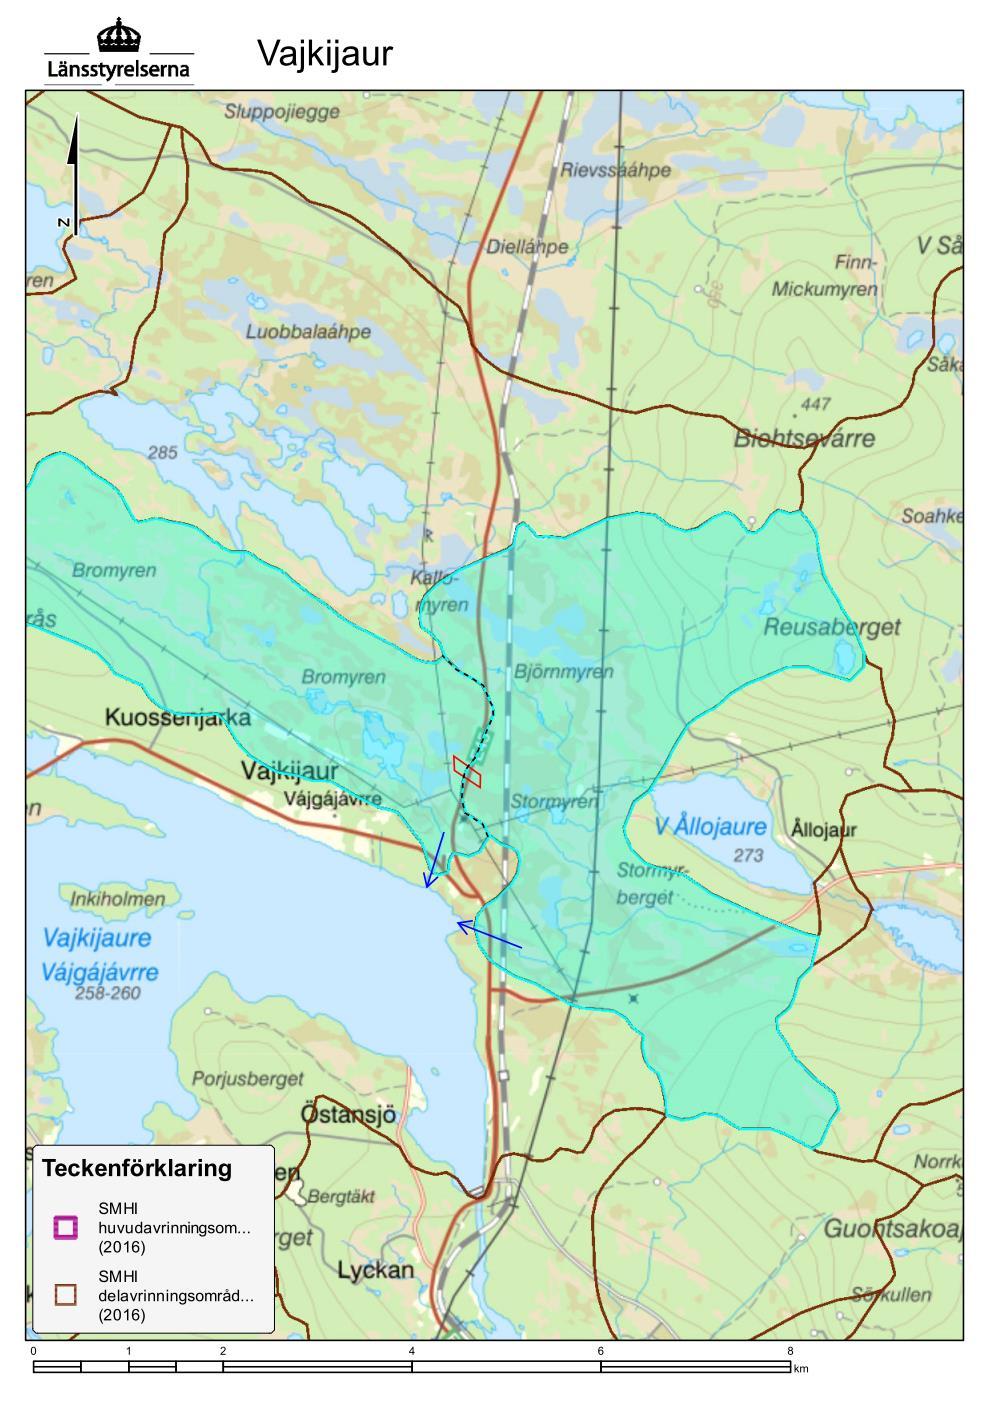 av området rinner mot Kvarnbäcken och den östra delen rinner mot Stormyrbäcken. Båda bäckarna mynnar i sjön Vajkijaure, se Figur 2.